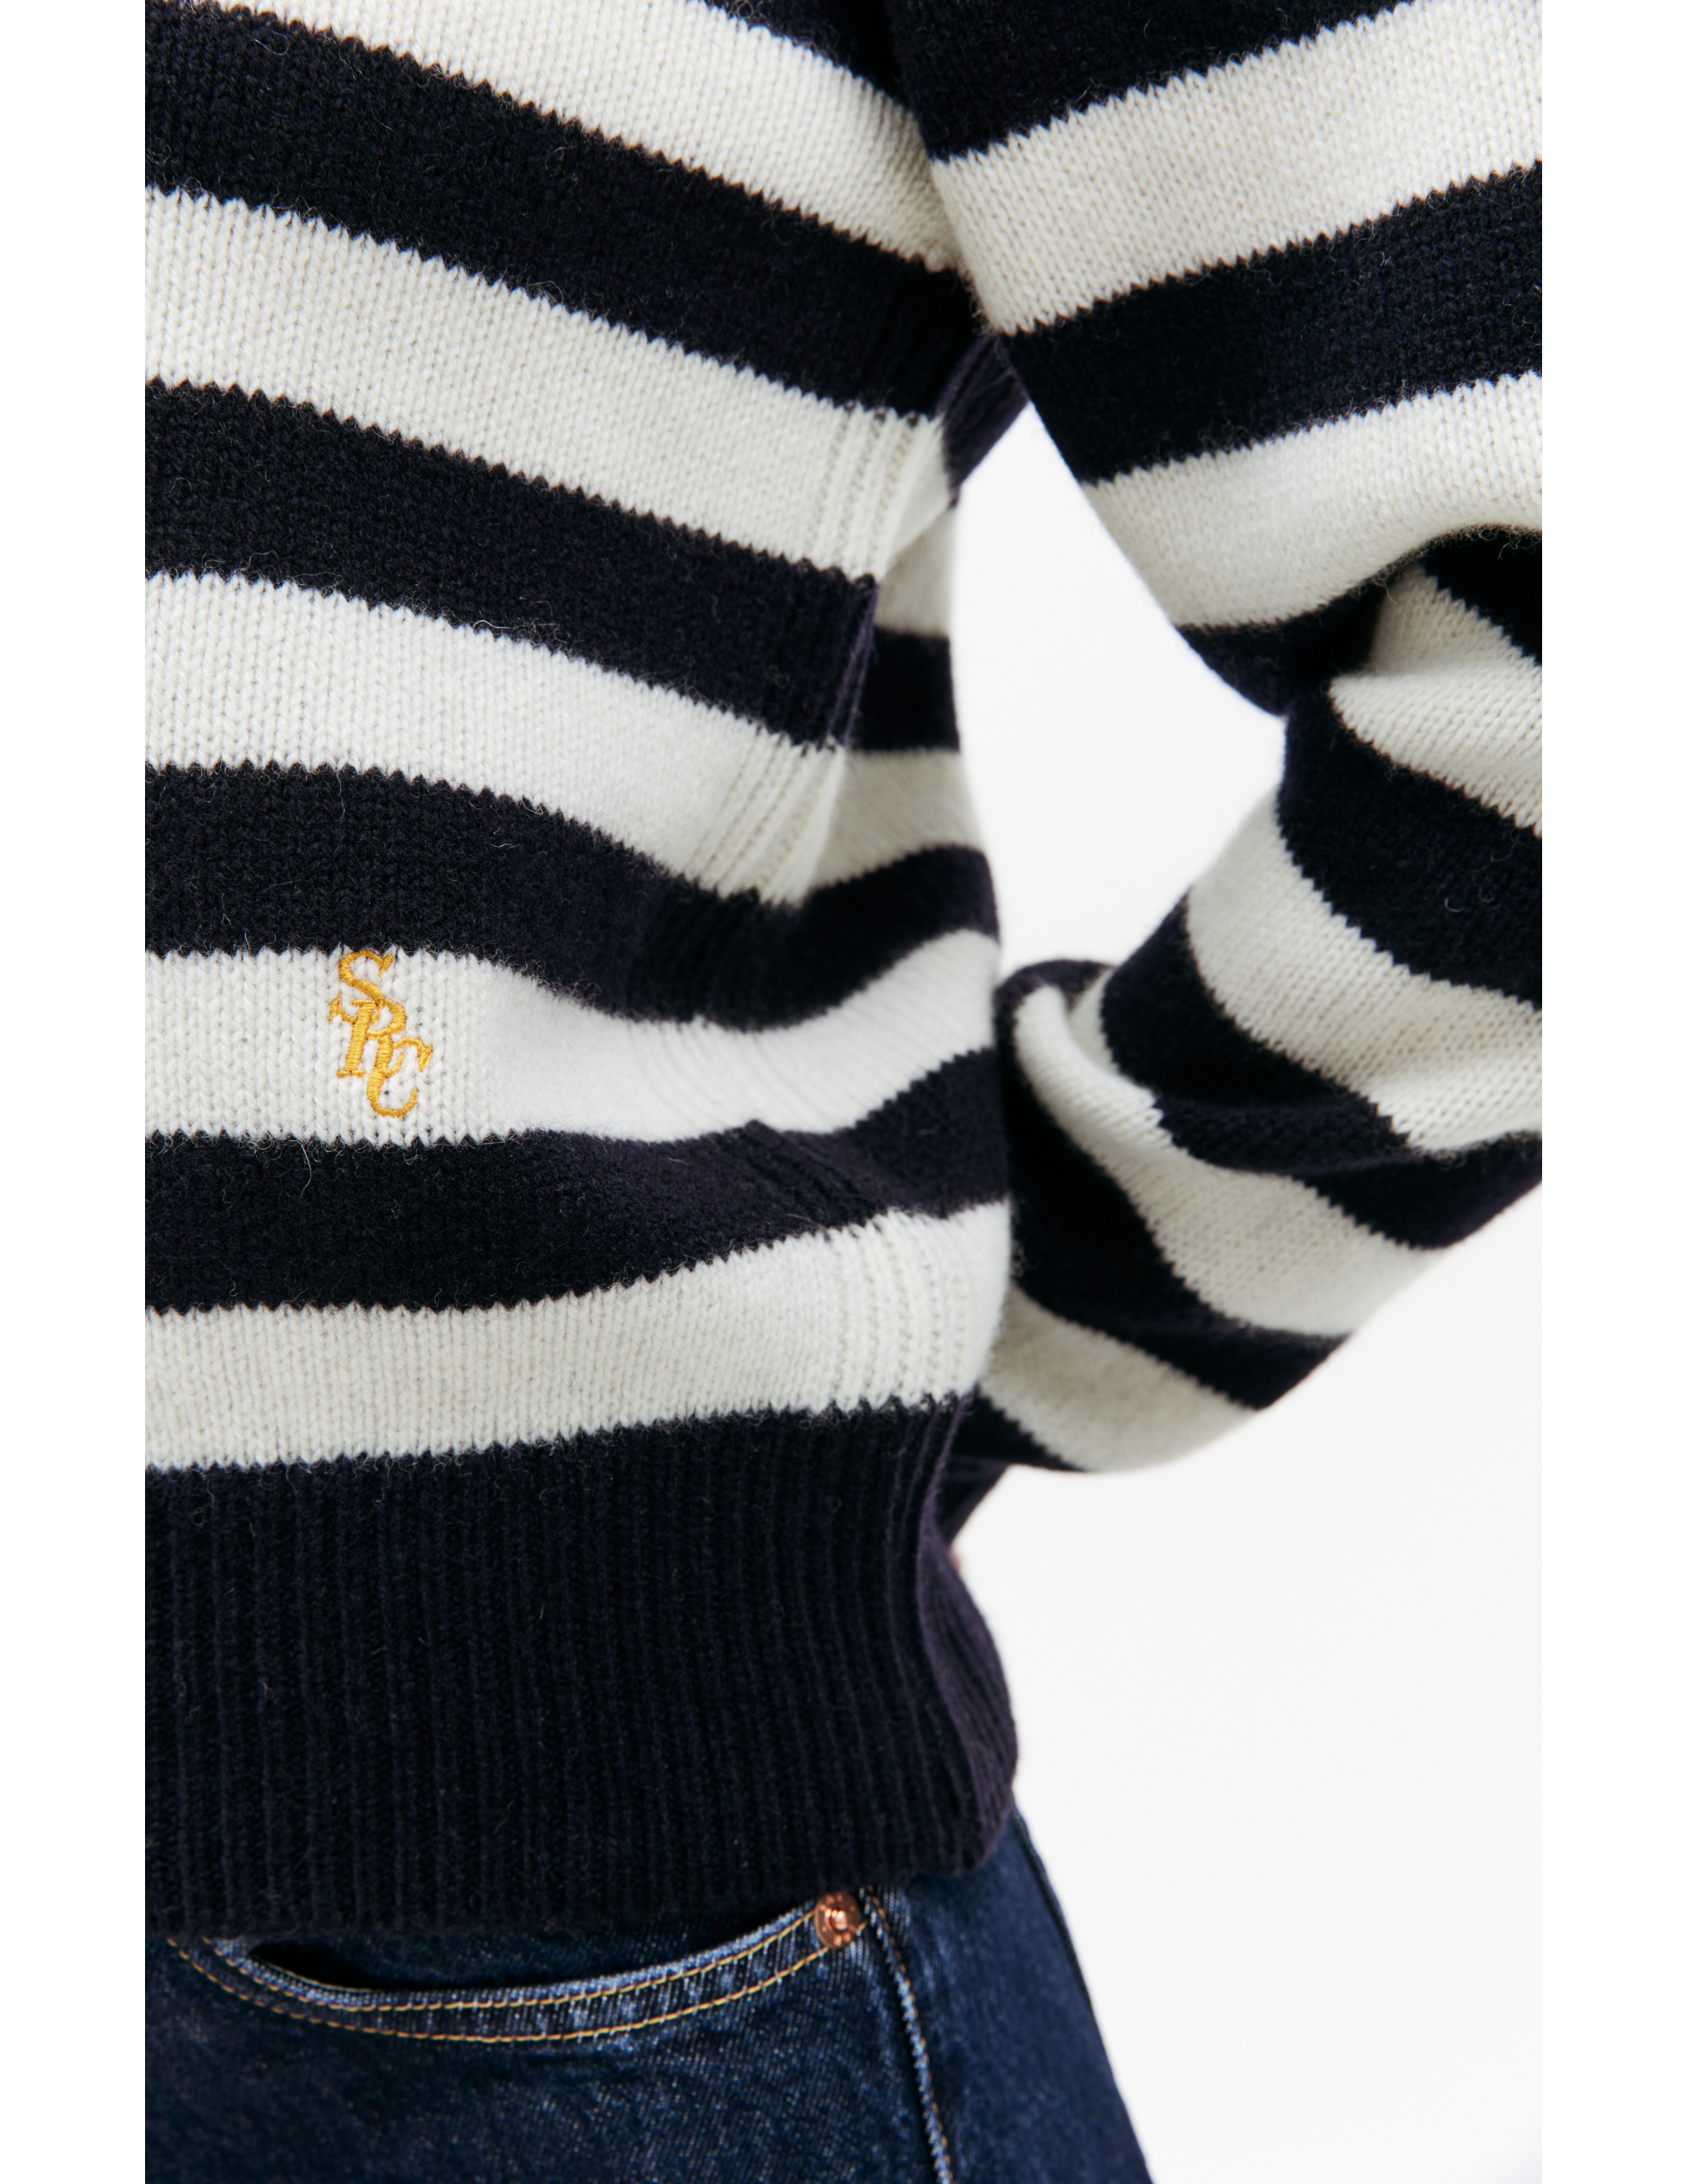 Шерстяной свитер в полоску SPORTY & RICH CRAW2387OS, размер S;M;L;XL - фото 4